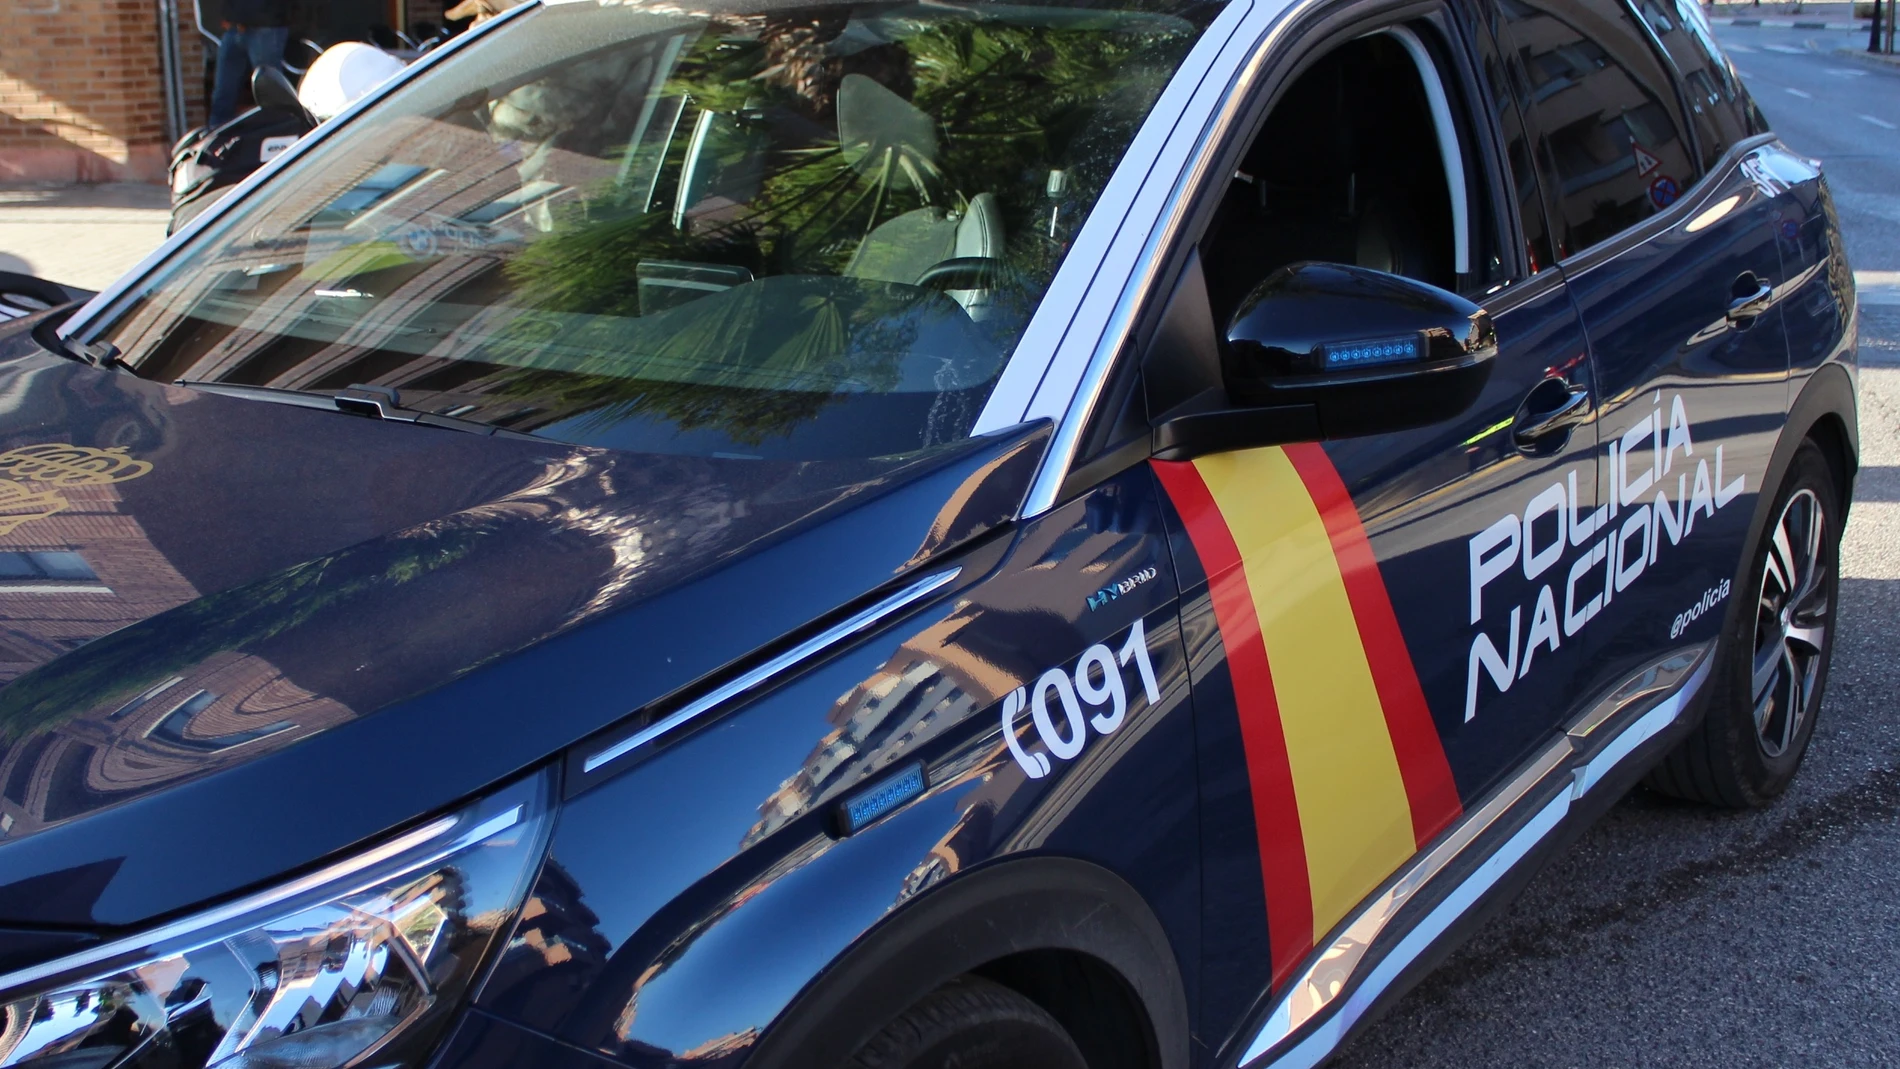 La Policía busca a un agresor sexual que atacó a una mujer en un garaje de Cartes (Cantabria)